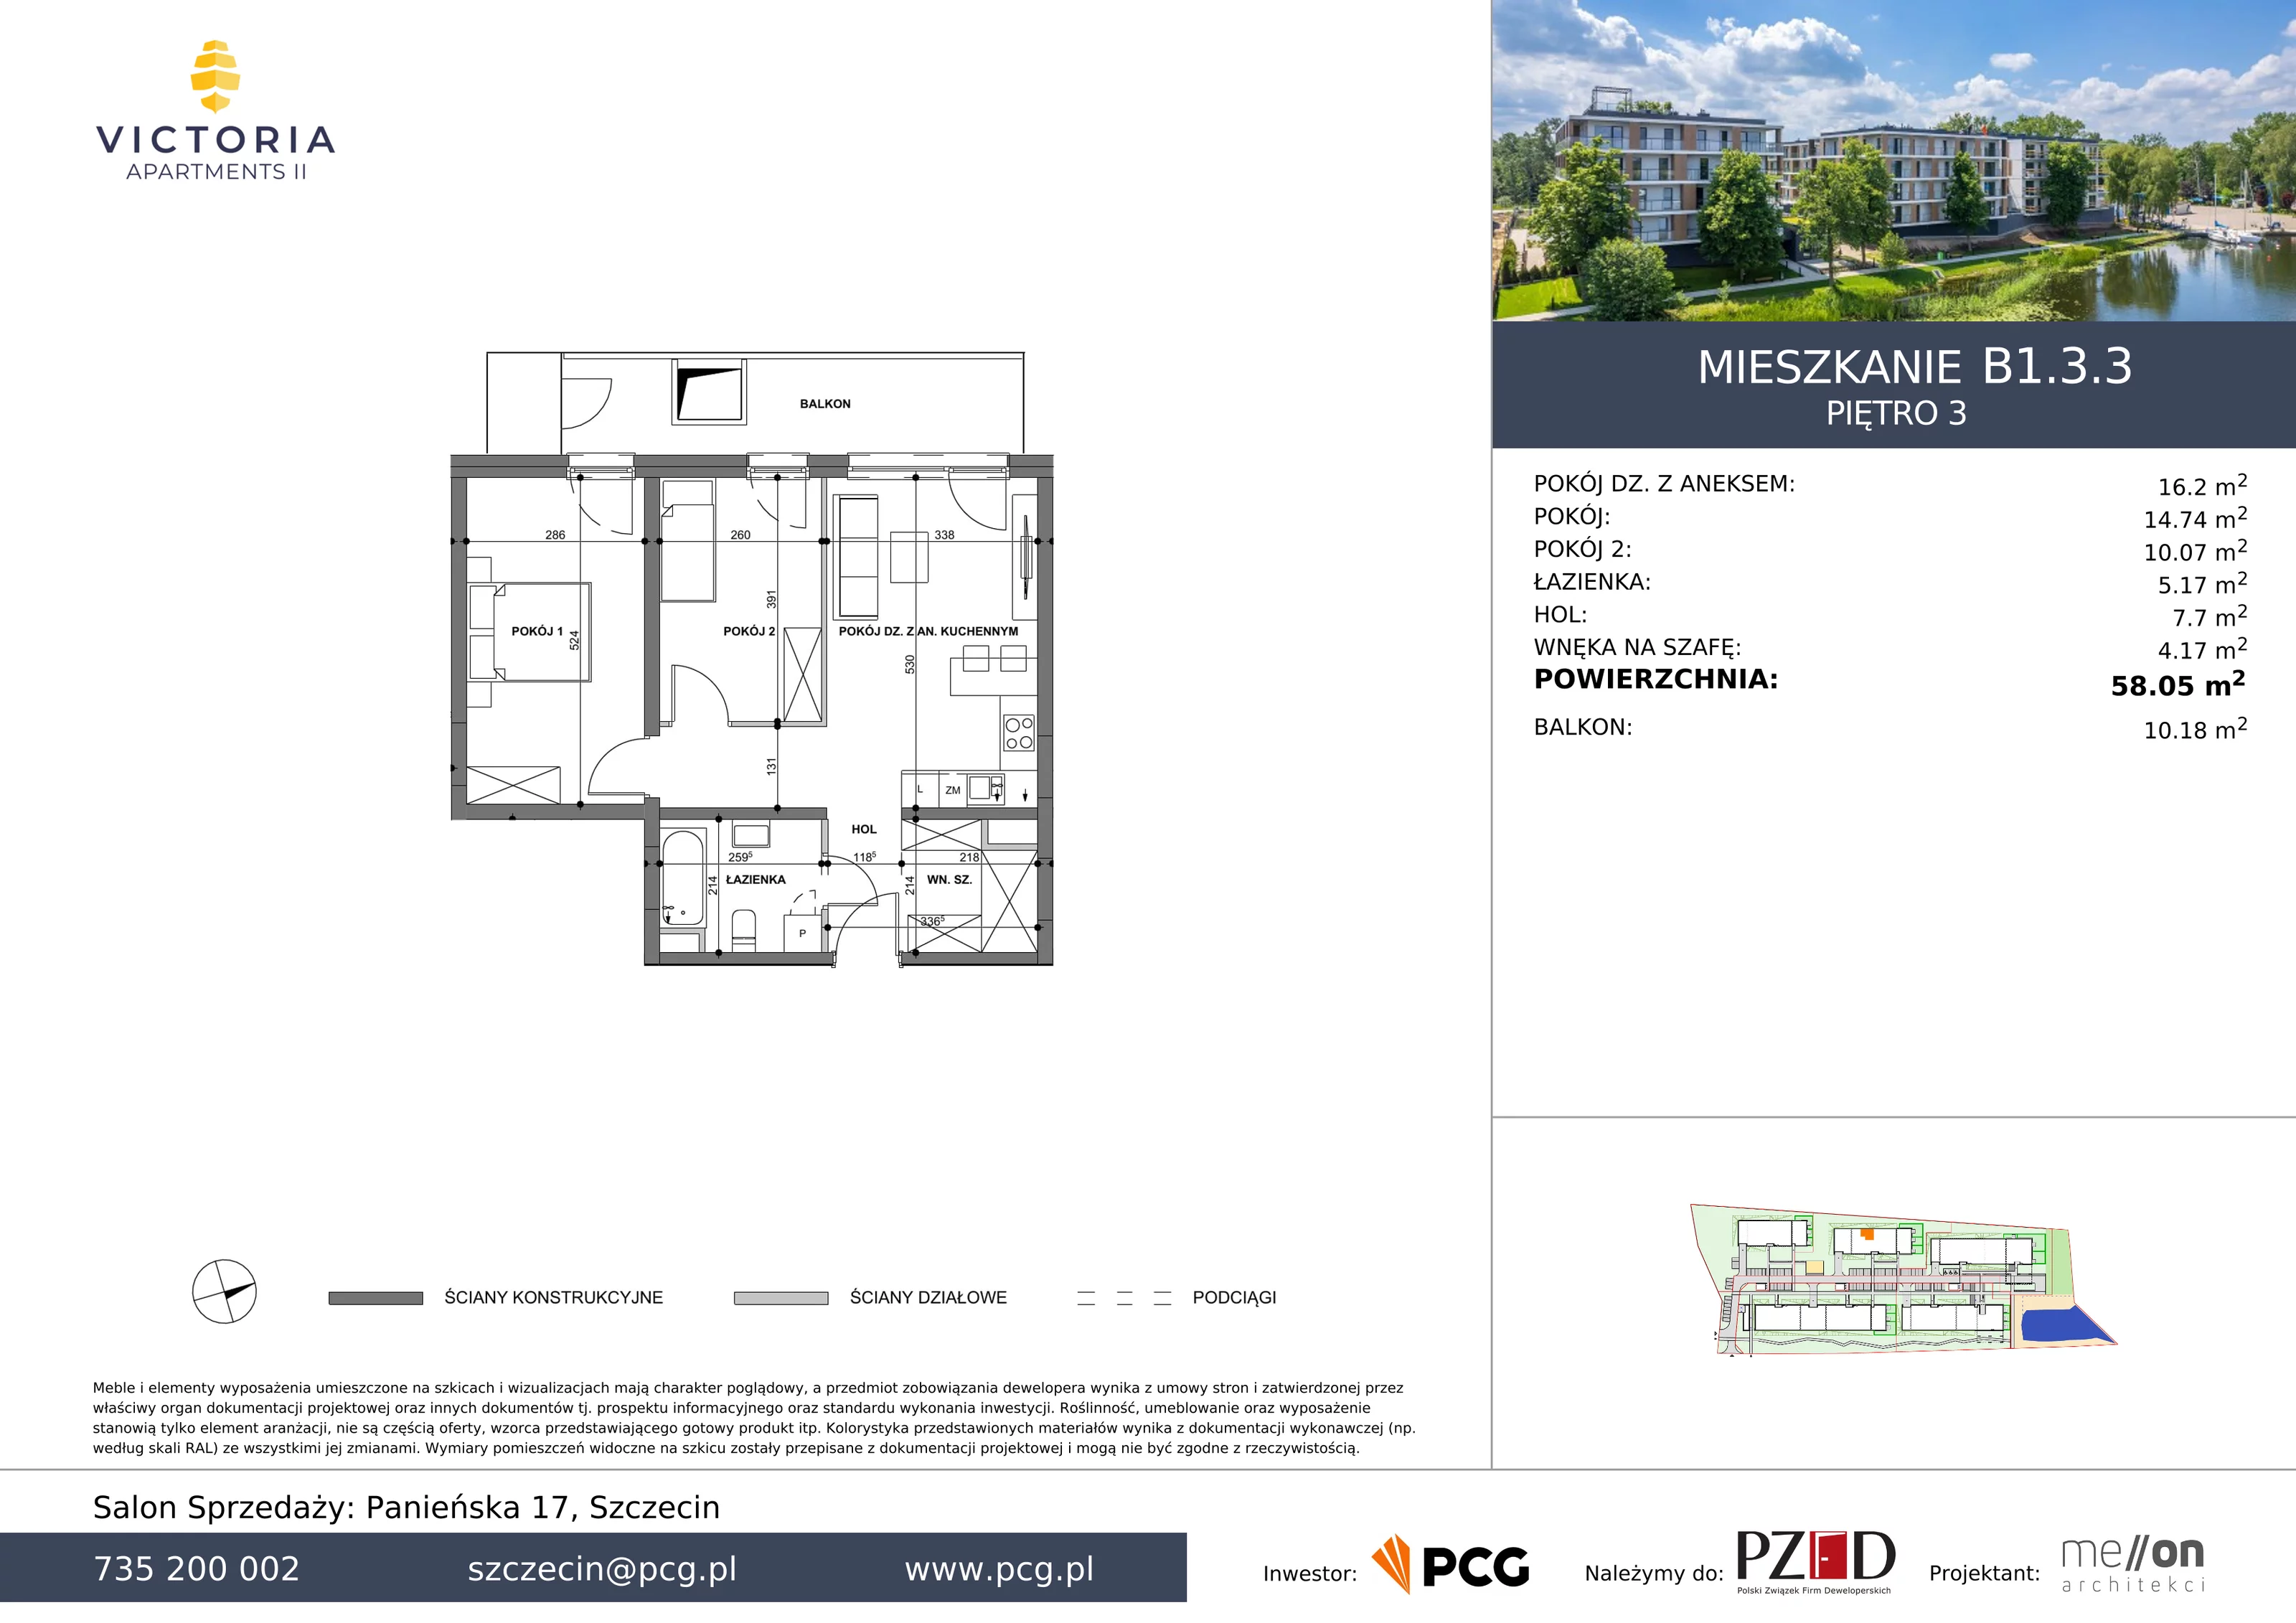 Apartament 58,05 m², piętro 3, oferta nr B1.3.3, Victoria Apartments II, Szczecin, Prawobrzeże, Dąbie, ul. Przestrzenna